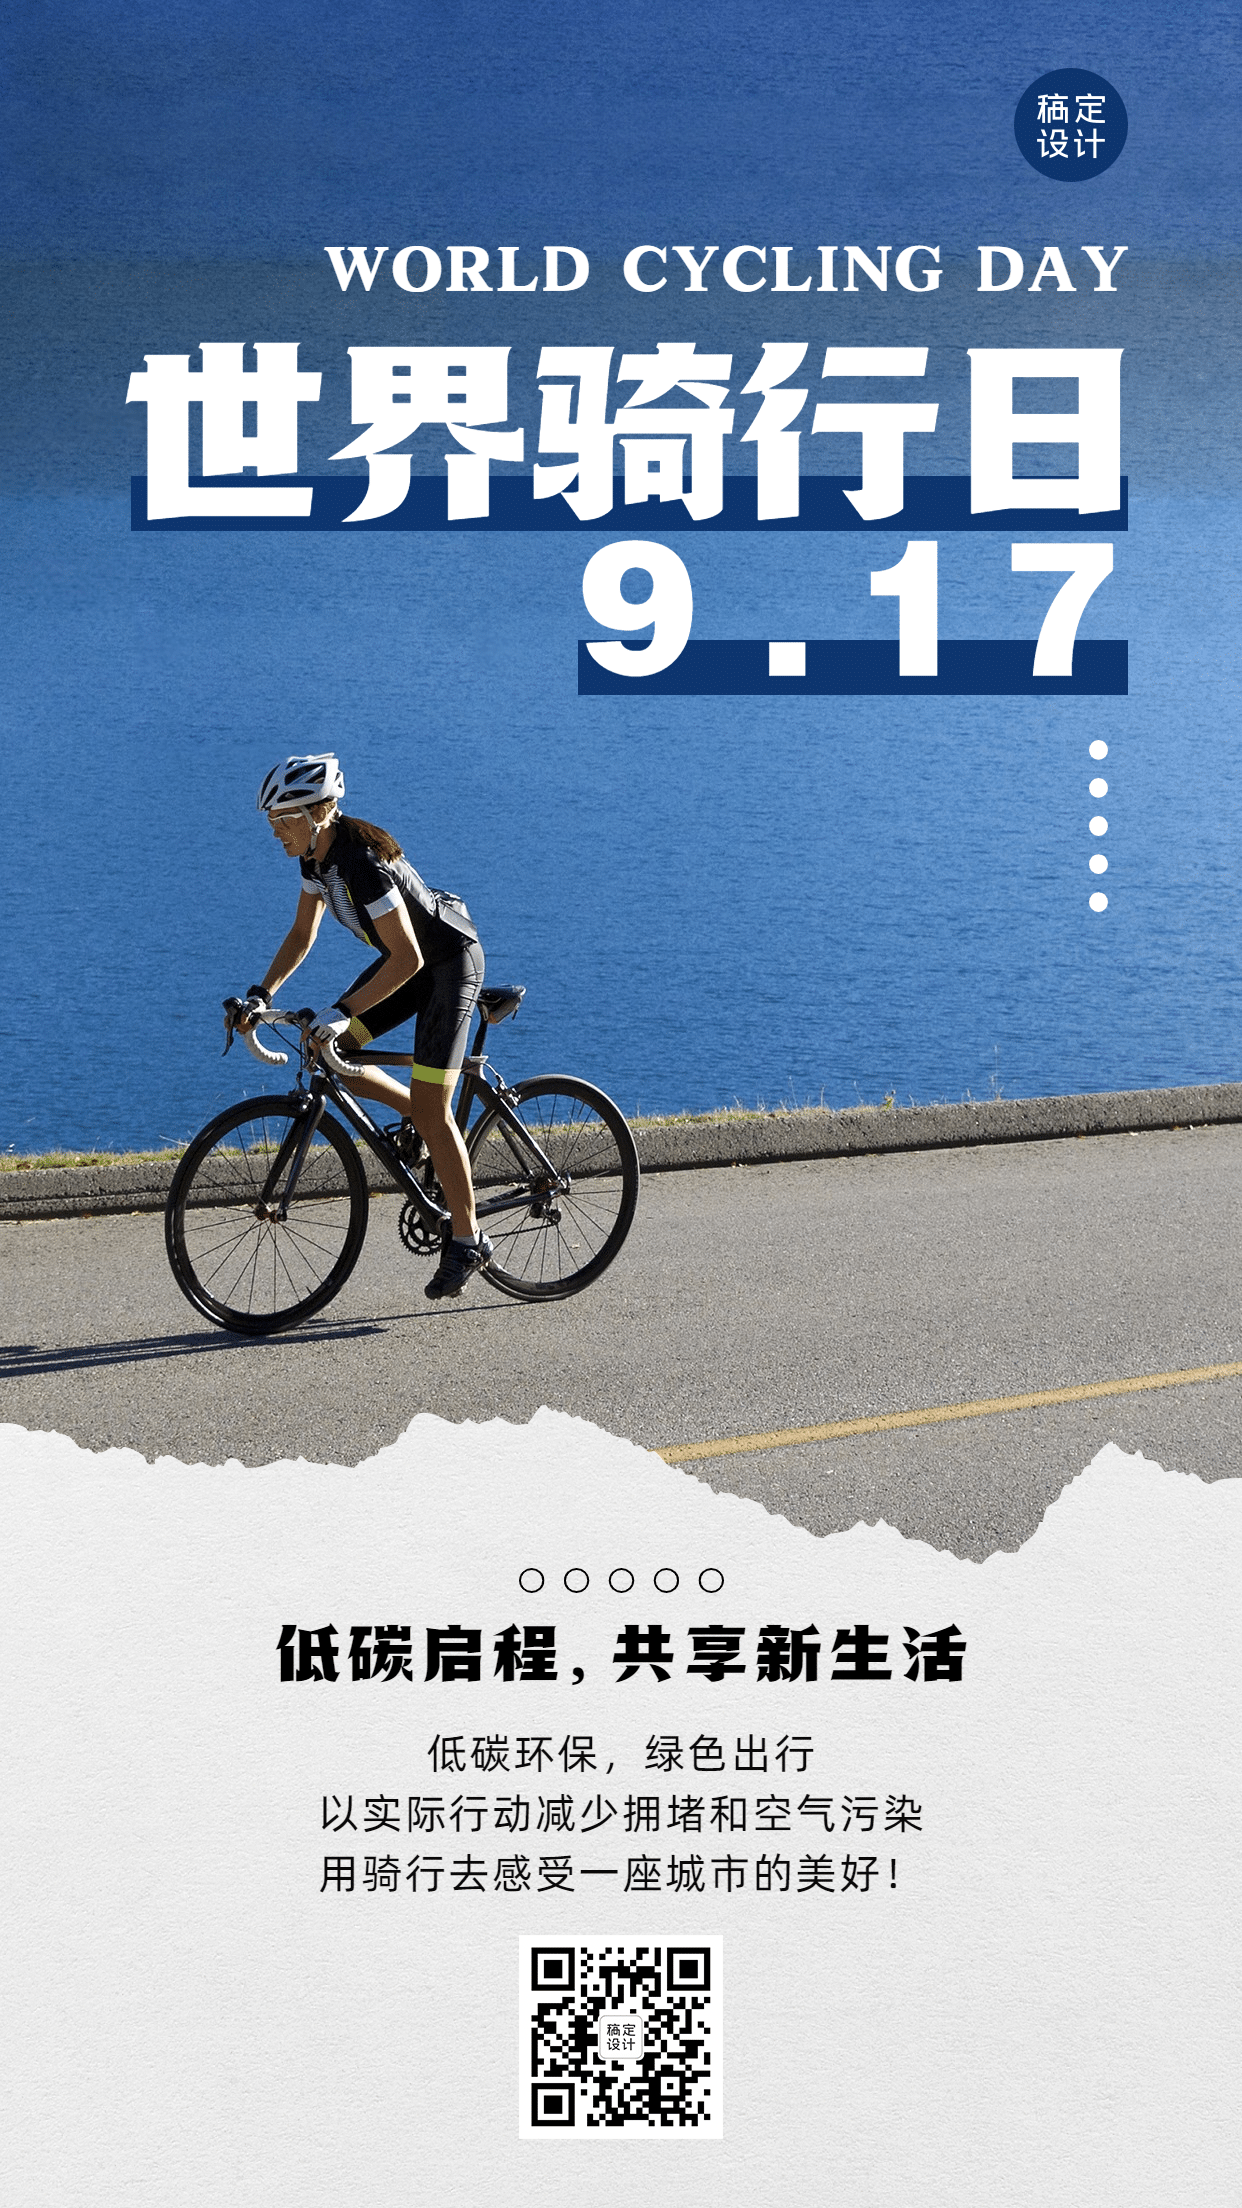 世界骑行日低碳环保出行宣传实景海报